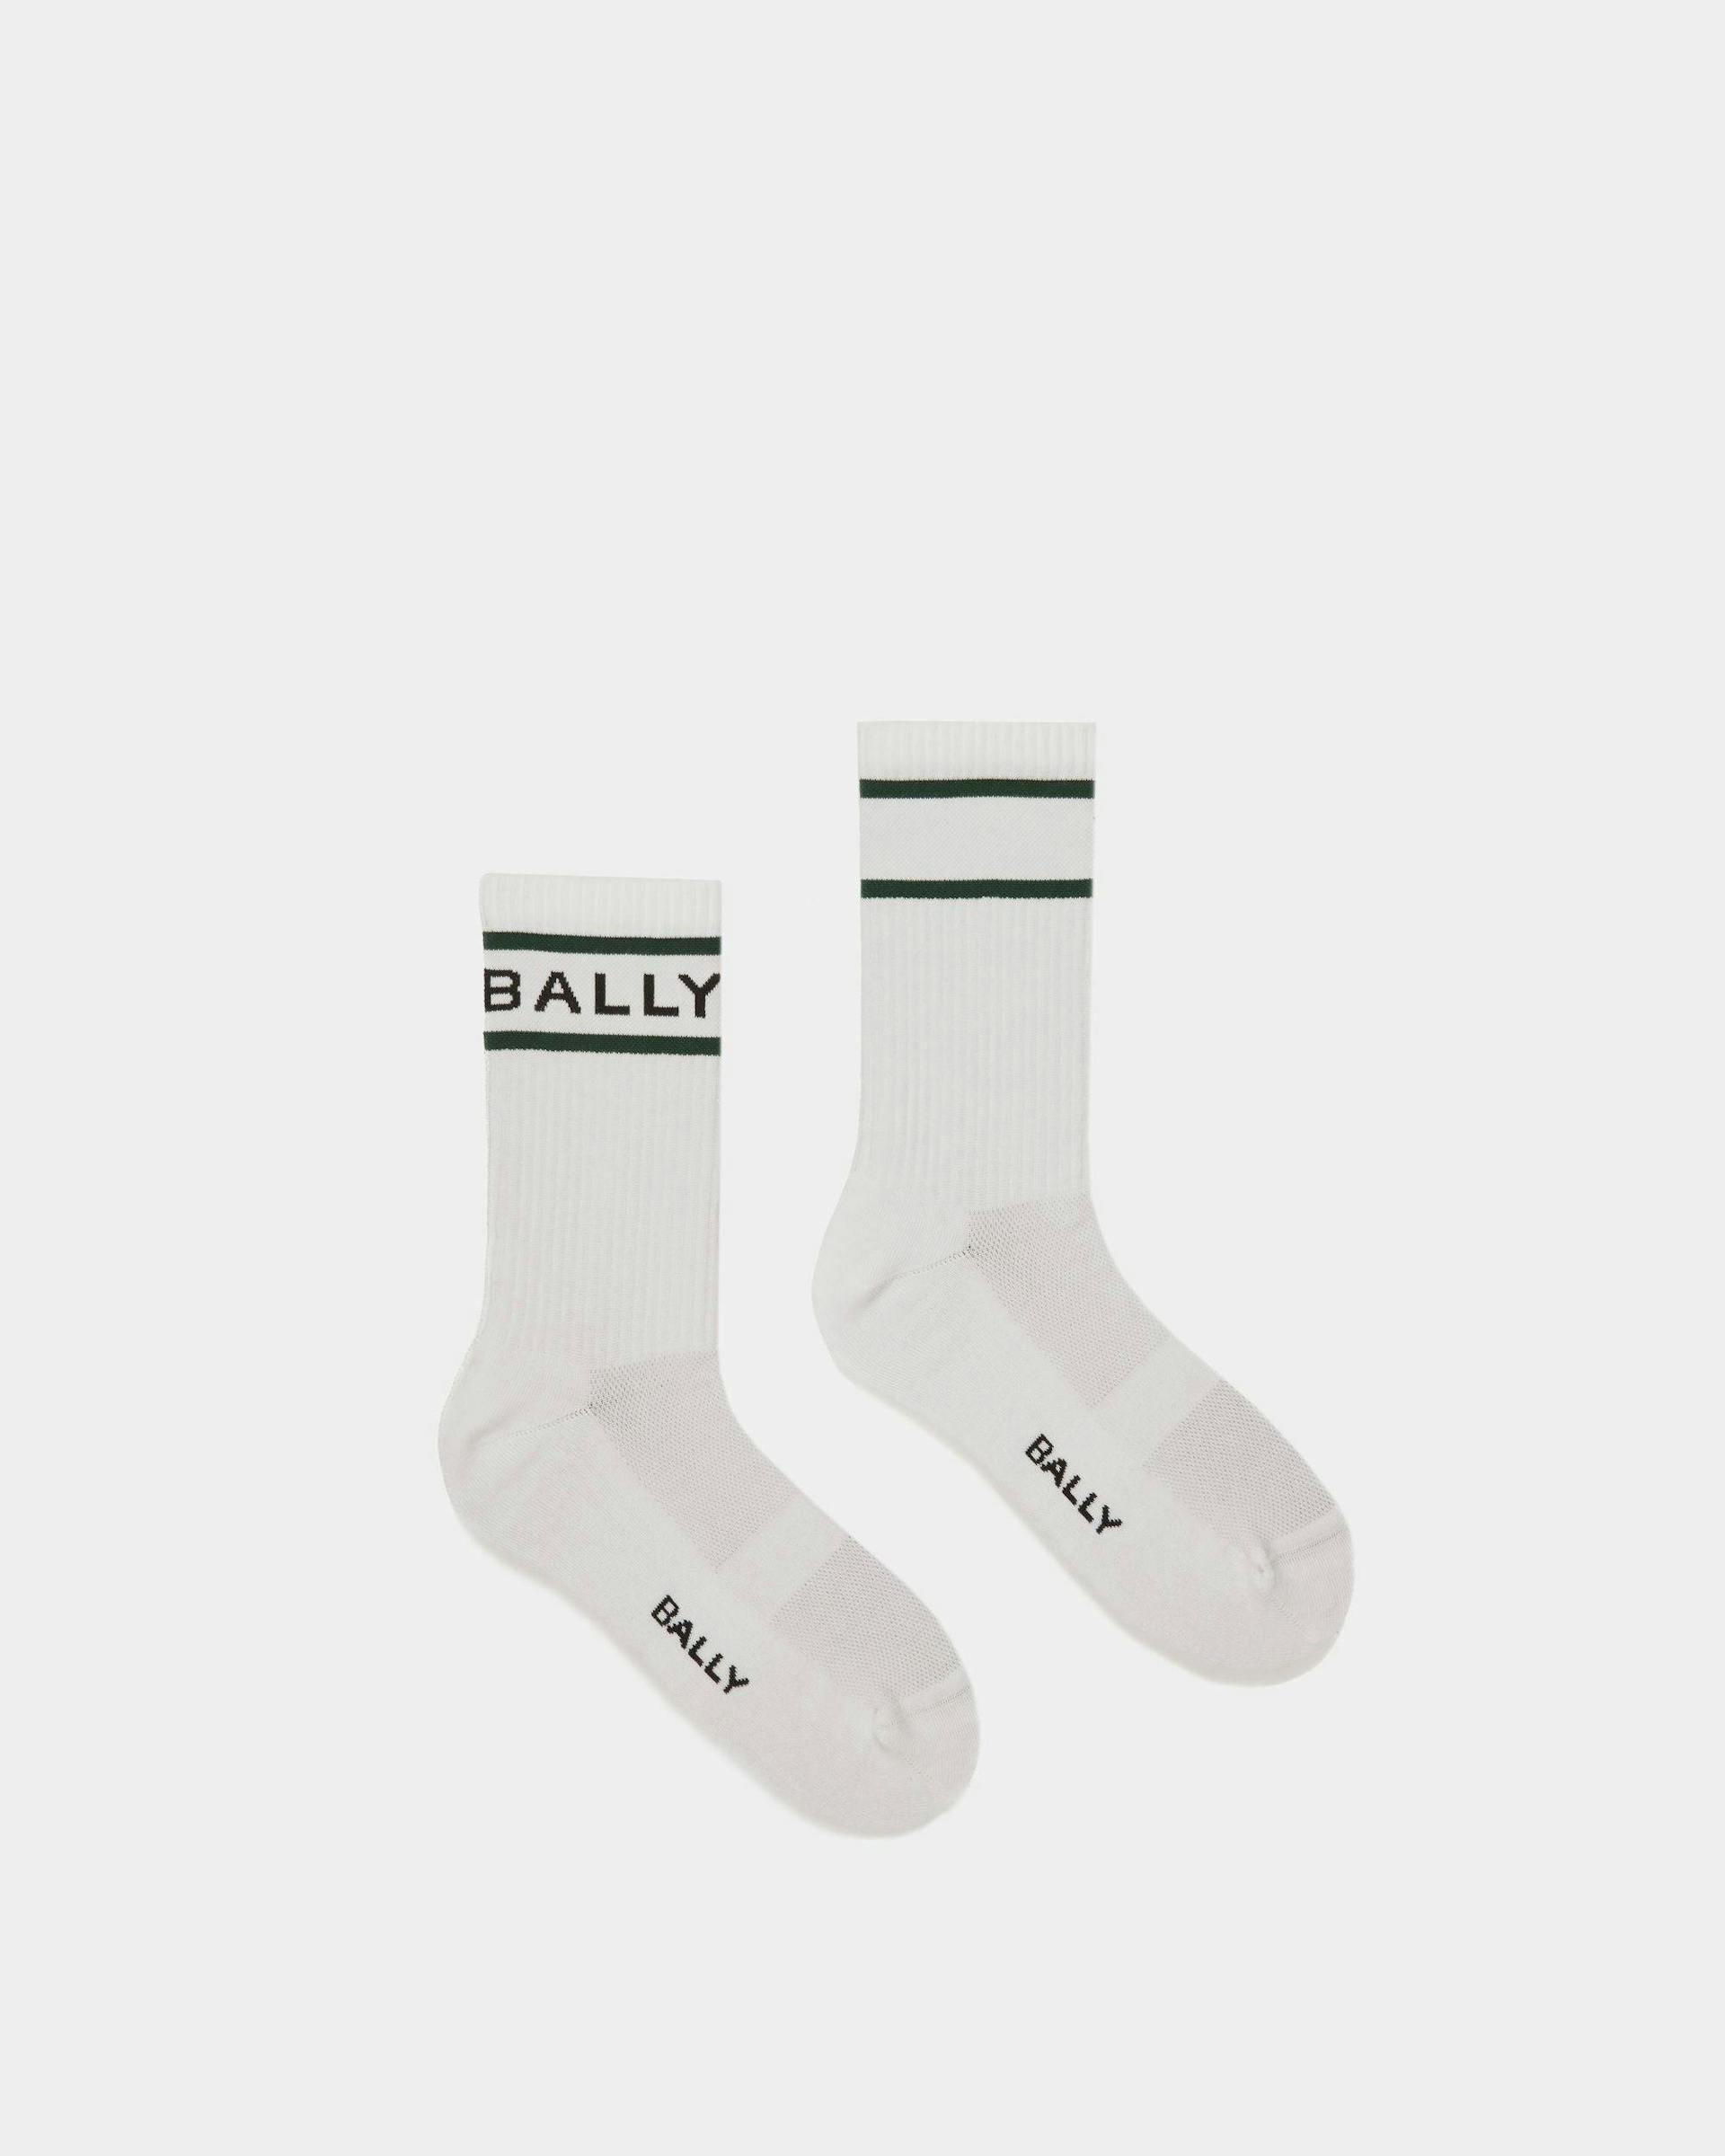 Bally Stripe Socks In White And Green - Men's - Bally - 01